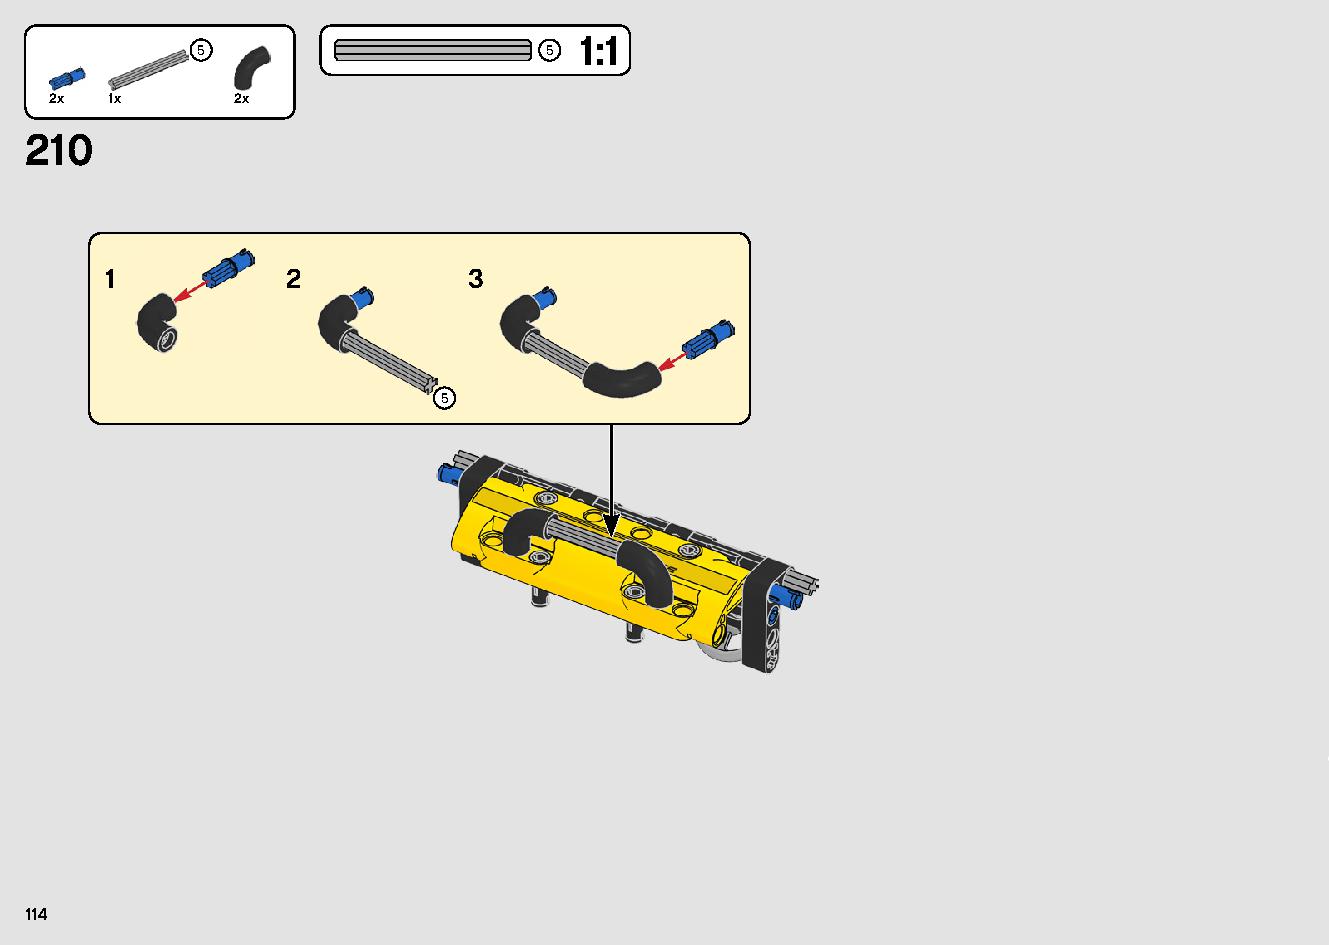 移動式クレーン車 42108 レゴの商品情報 レゴの説明書・組立方法 114 page